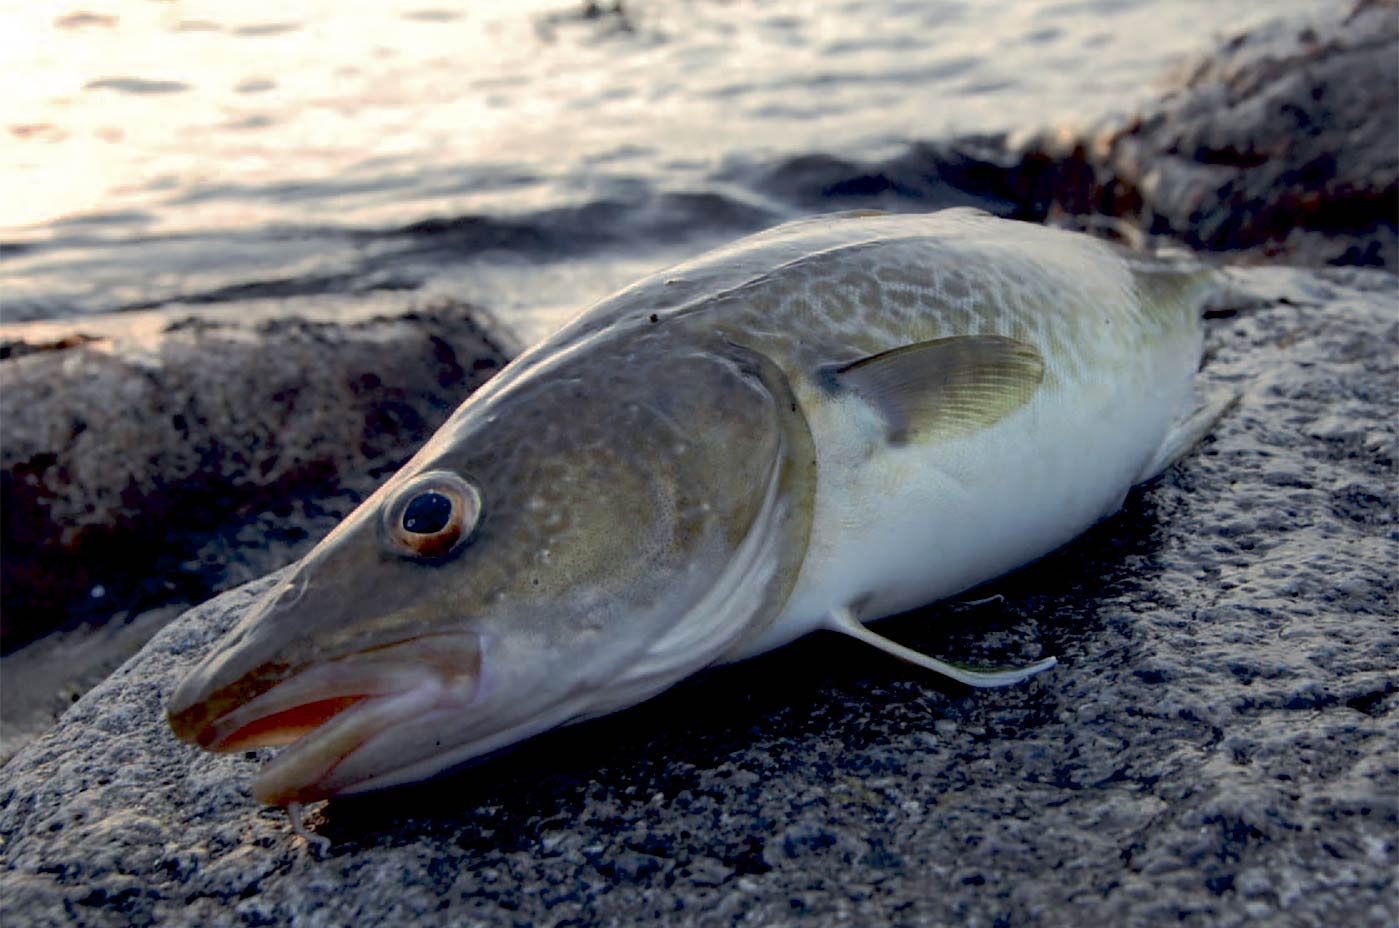 Kysttorsken er desværre blevet en mere og mere sjælden fangst - også ved Kolding Fjord, hvor denne er taget.